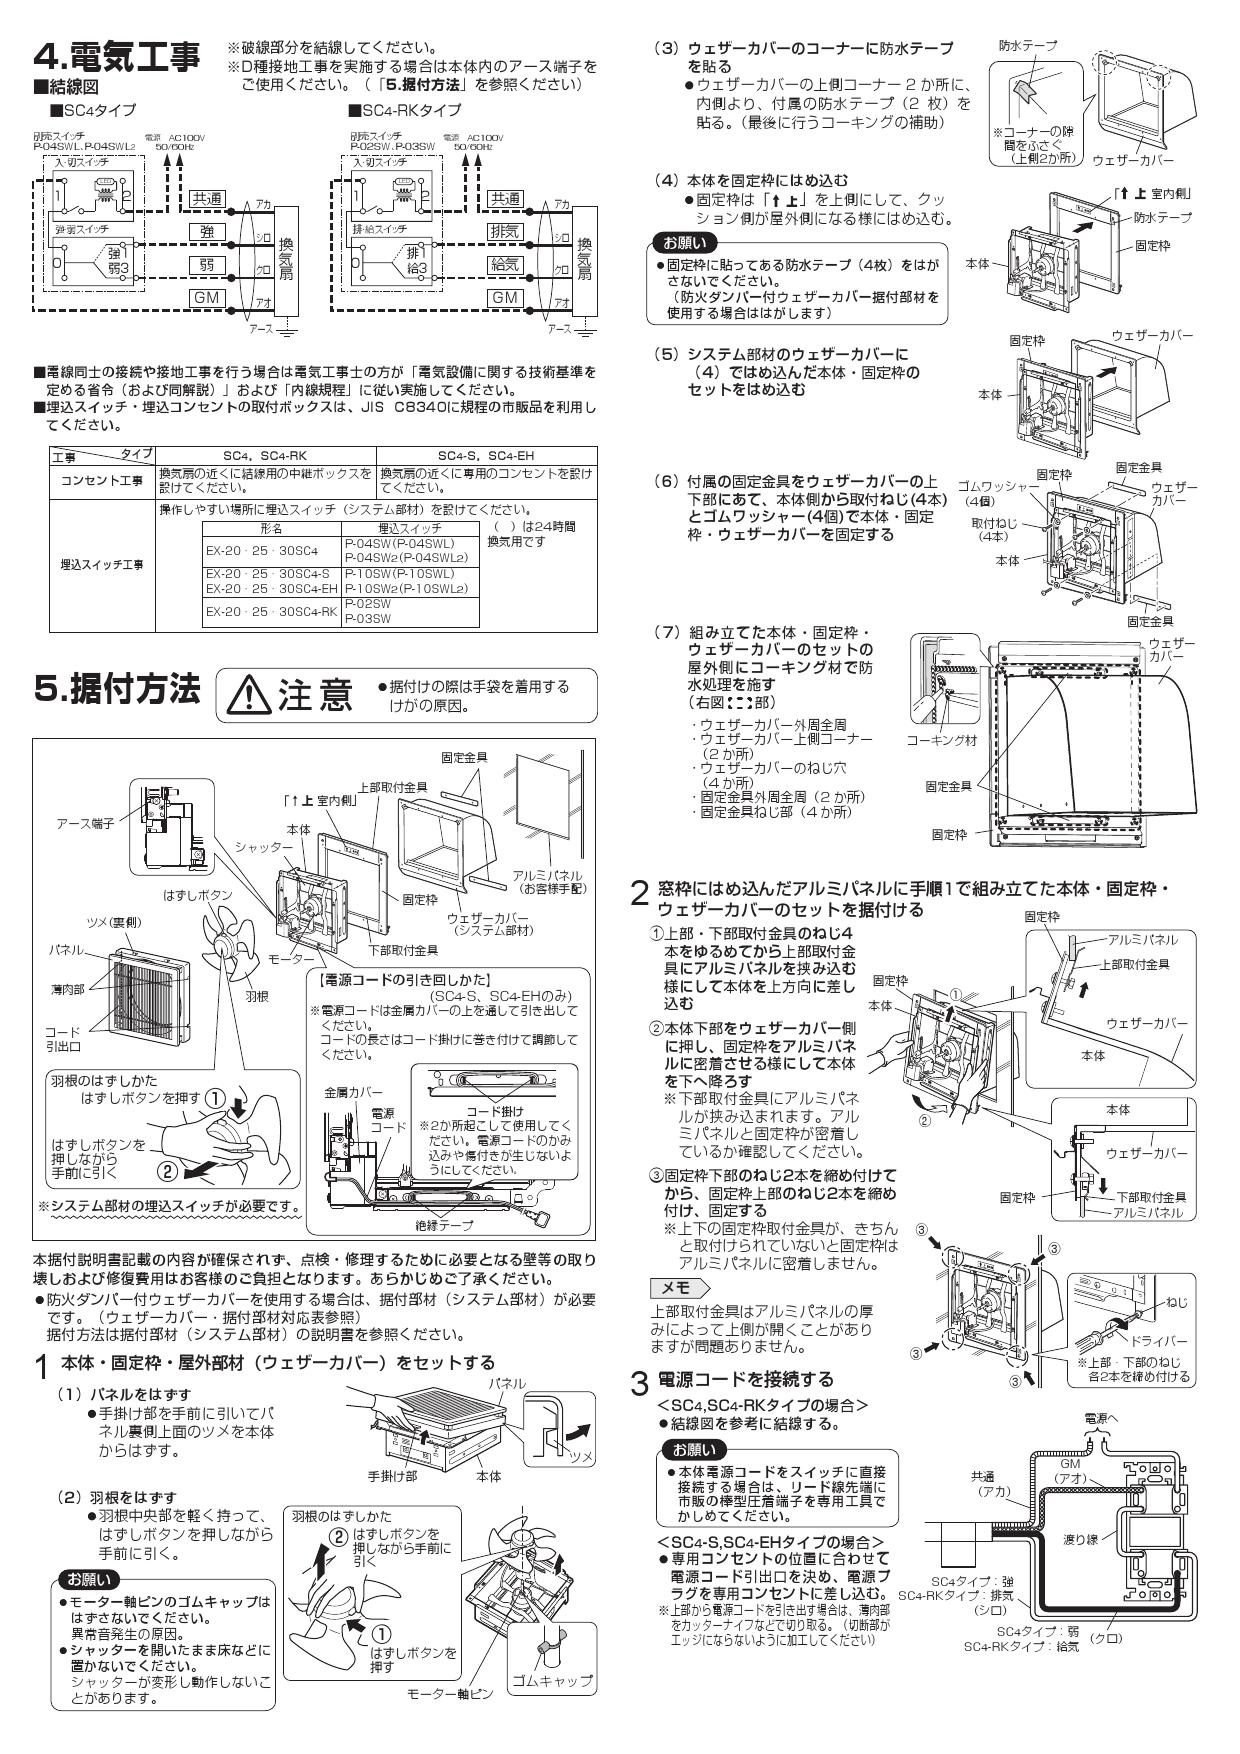 福袋セール】 三菱 EX-30SC3-RK 標準換気扇 格子タイプ 給排気式